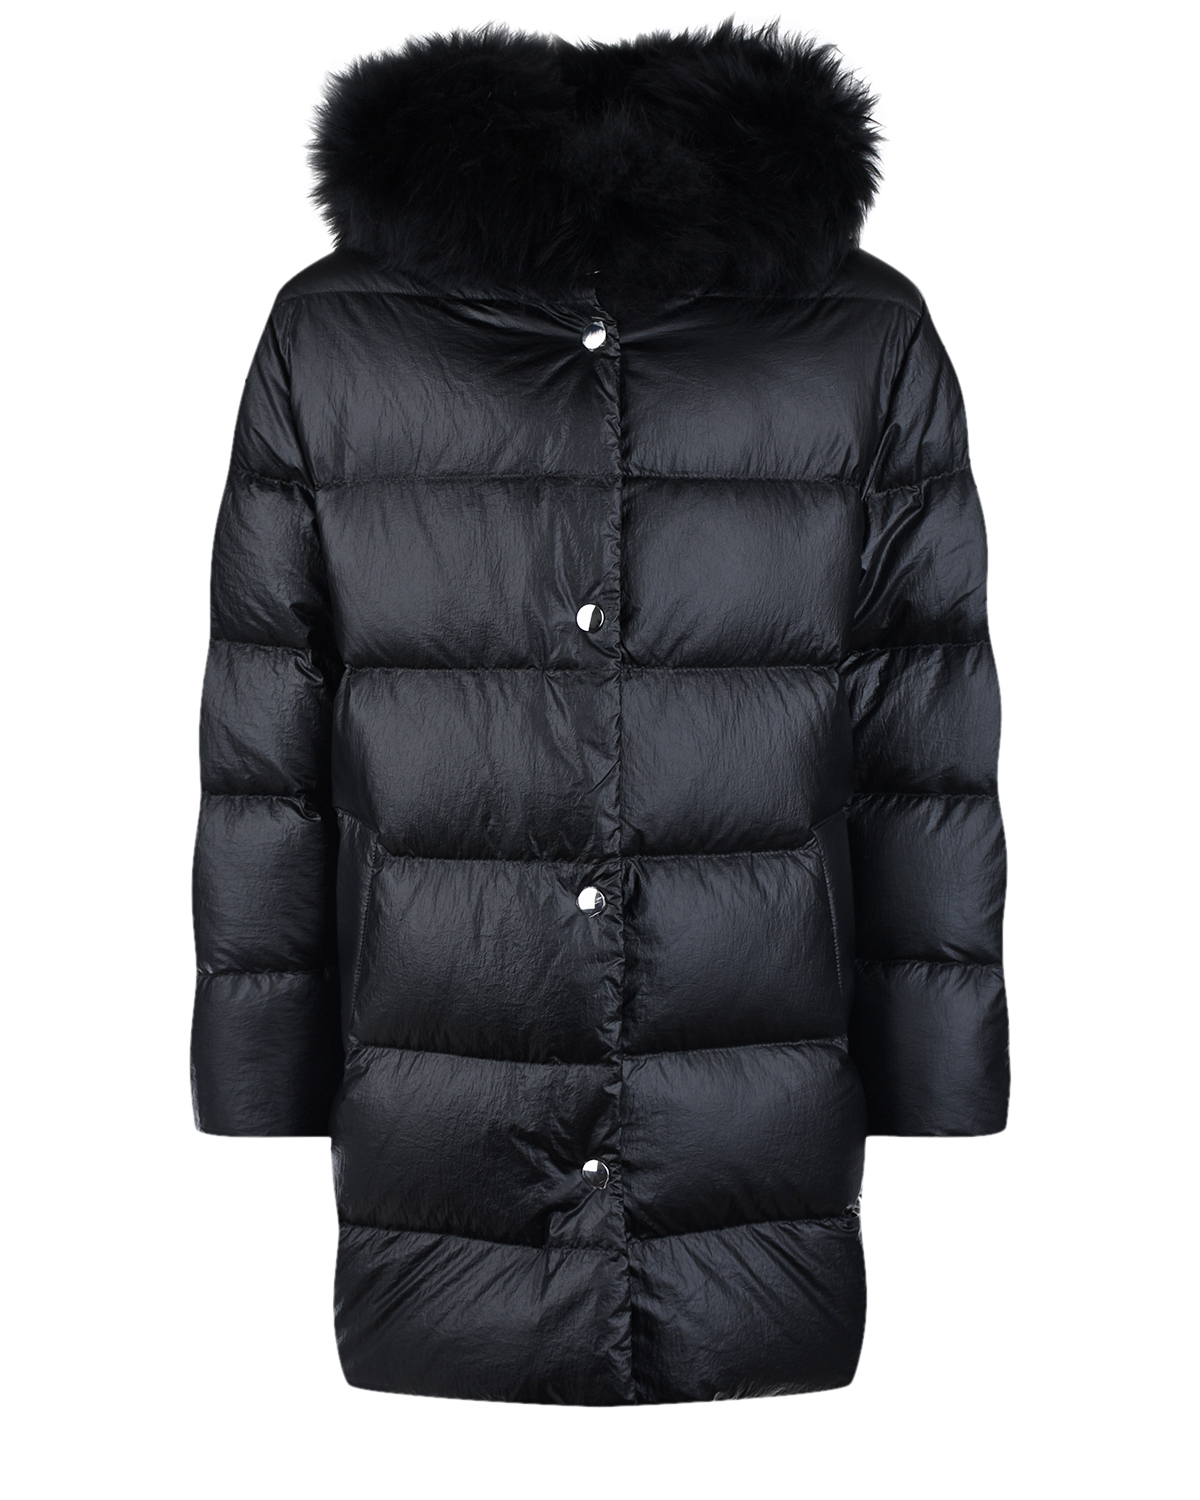 Купить Черное пальто с меховой отделкой Yves Salomon детское, Черный, 100%мех, 100%полиамид, 97%полиэстер+3%эластан, 95%пух+5%перо